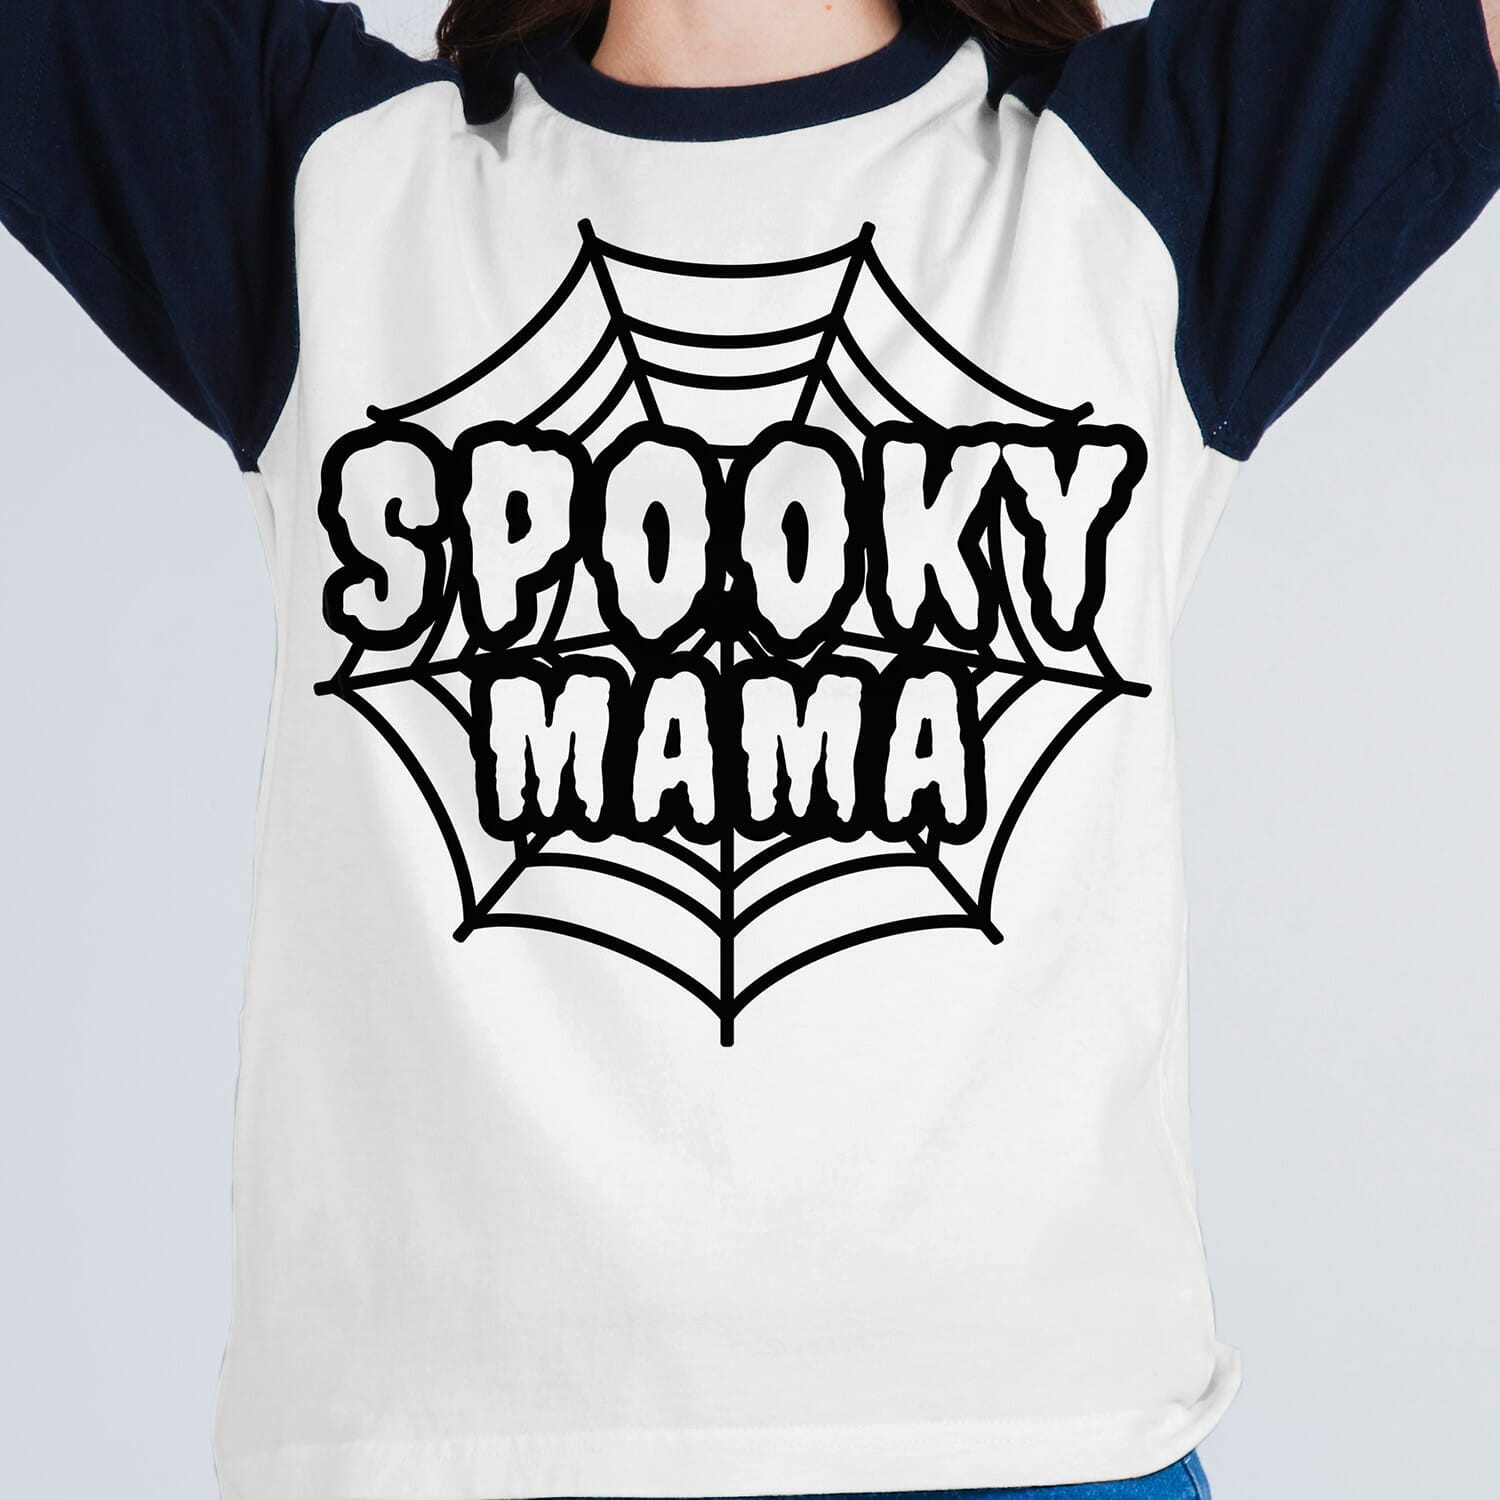 Spooky Mama - Halloween Tshirt Design